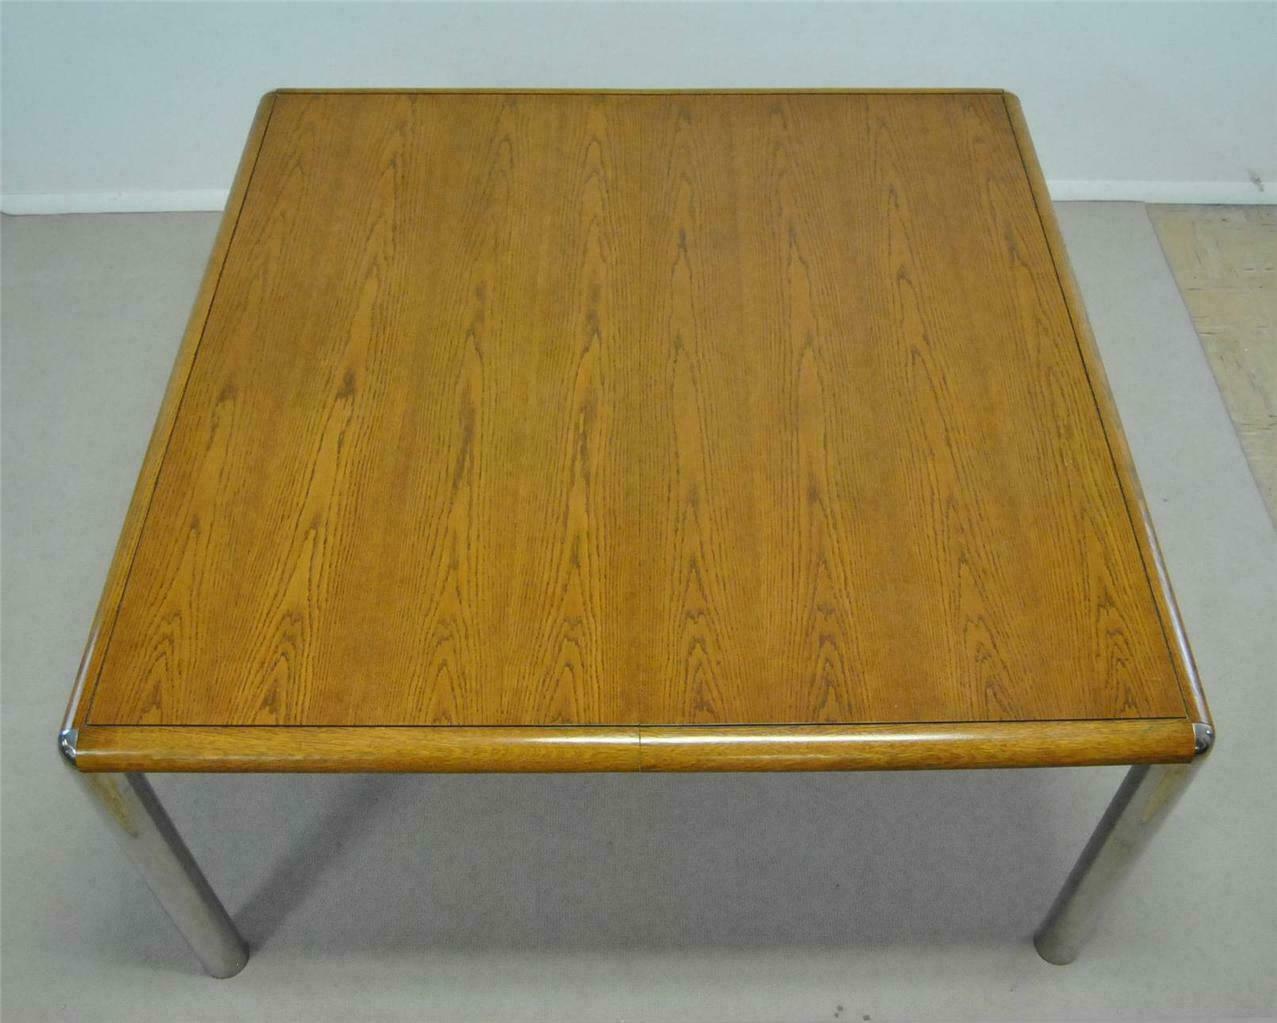 Ein klassischer Esstisch aus der Mitte des Jahrhunderts. Die Tabelle ist identisch mit einer Pace-Style-Tabelle, aber es gibt kein Fertigungsetikett, das dies unterstützt. Die Tischplatte ist aus Eiche und wird an jeder Ecke von verchromten